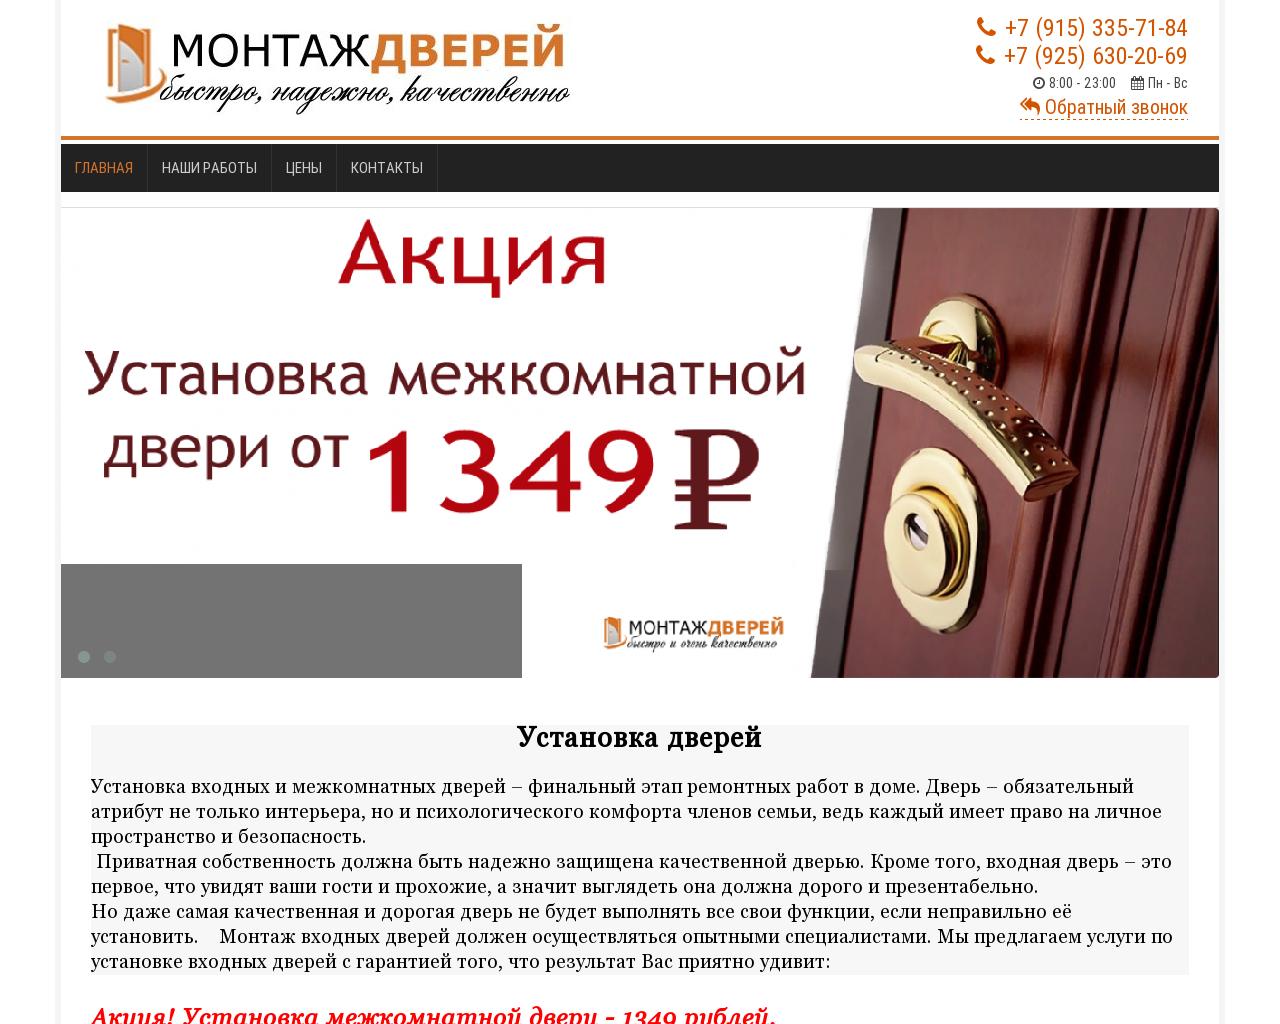 Изображение сайта doors-prof.ru в разрешении 1280x1024